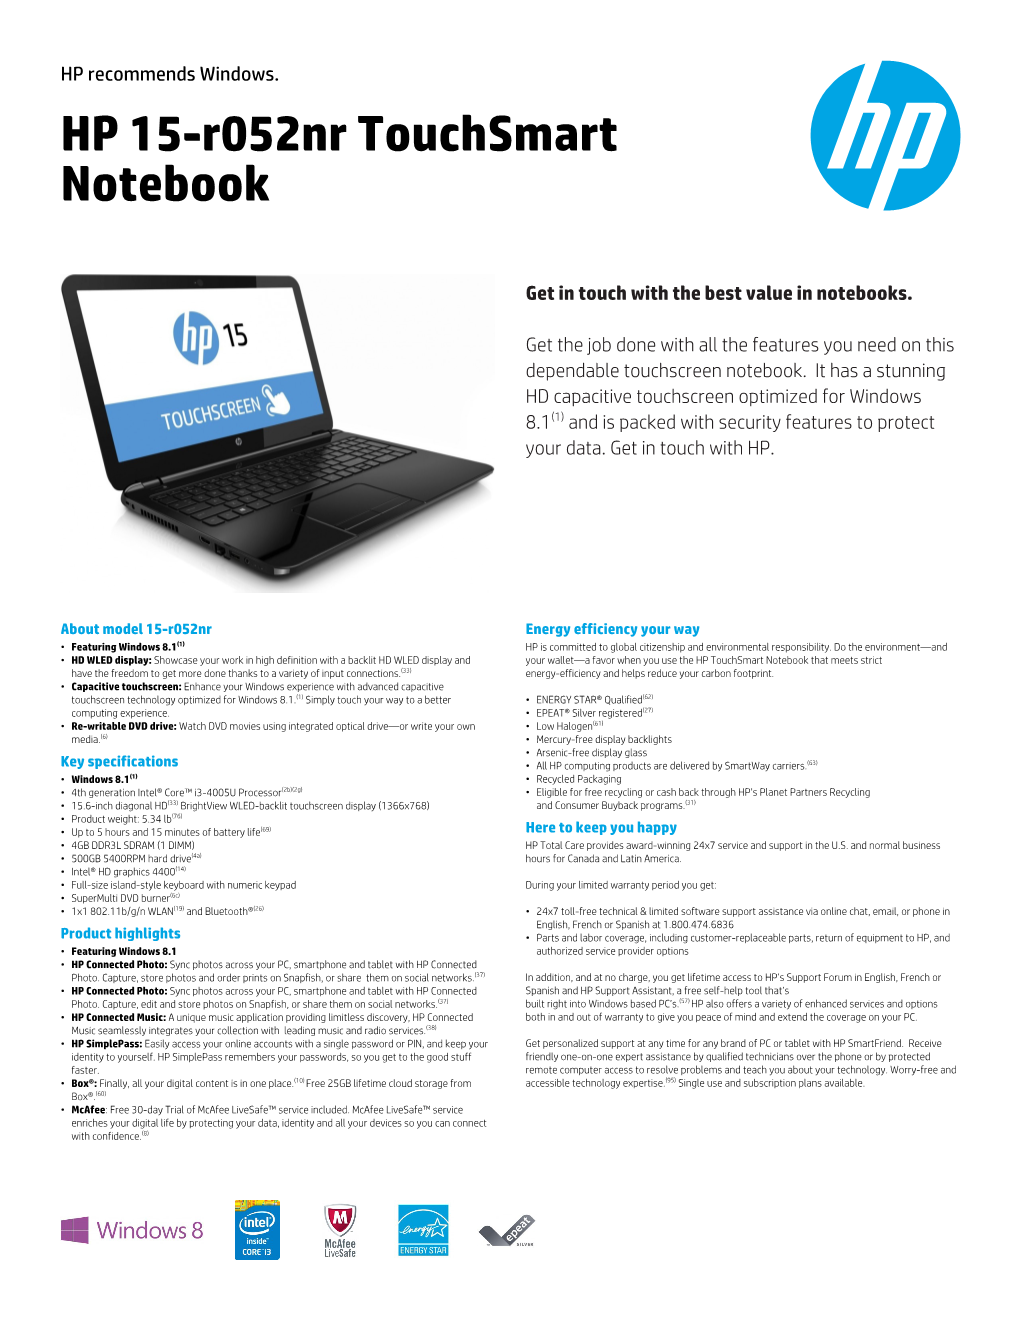 HP 15-R052nr Touchsmart Notebook